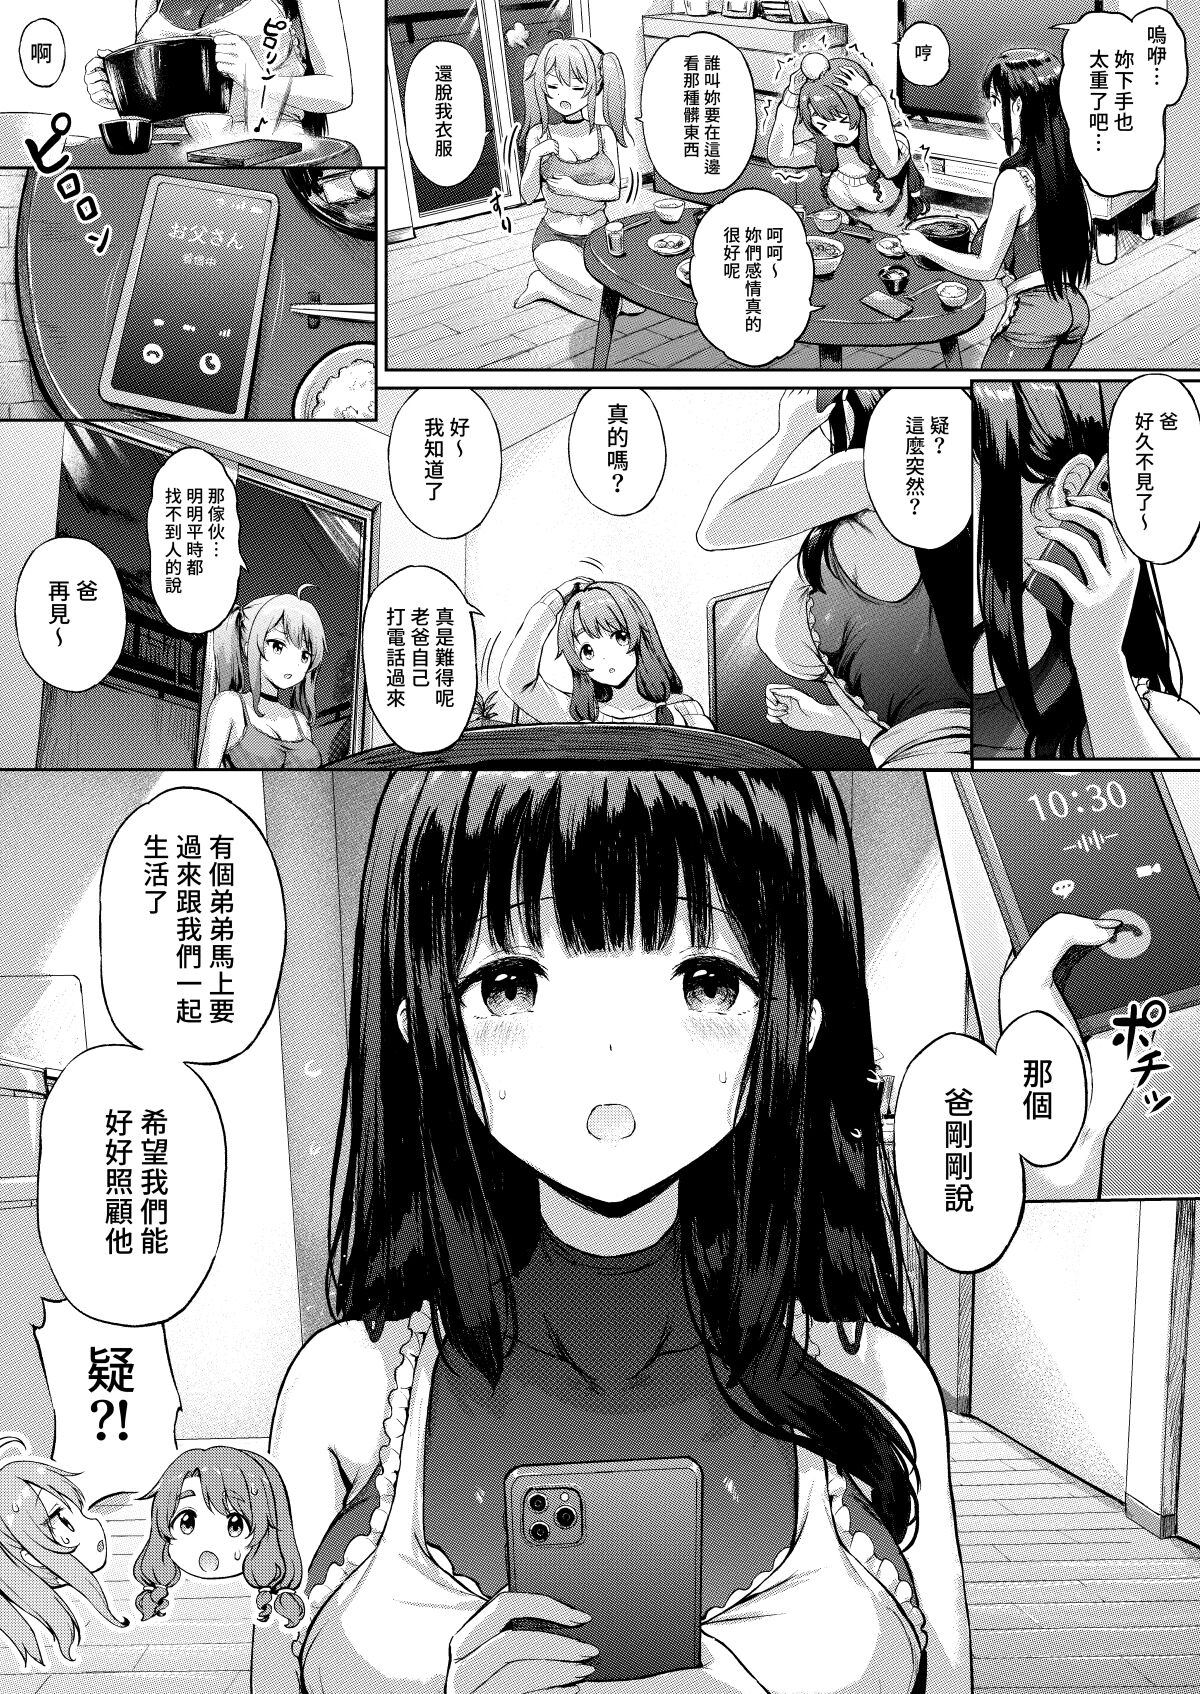 [Sayika] Sanshimai Manga ep1 p1-20 [Chinese] [Decensored] [Sayika] 三姉妹漫画ep1 p1-9 [中国語] [無修正]